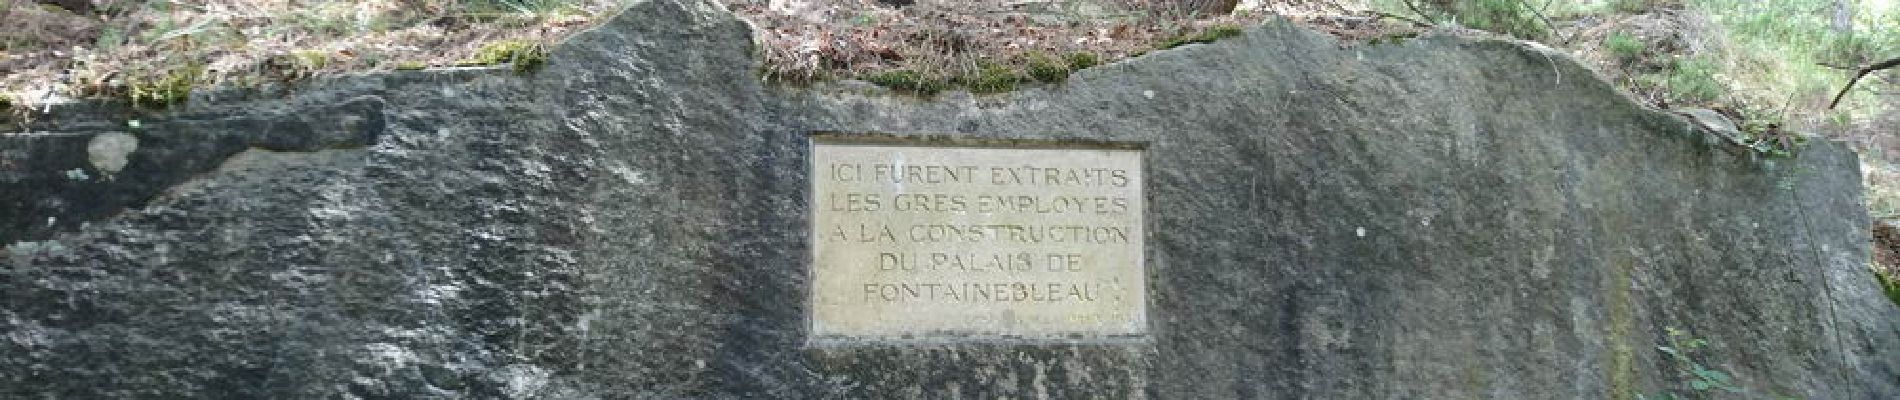 Point of interest Fontainebleau - 06 - Une stèle en l'honneur des carriers - Photo